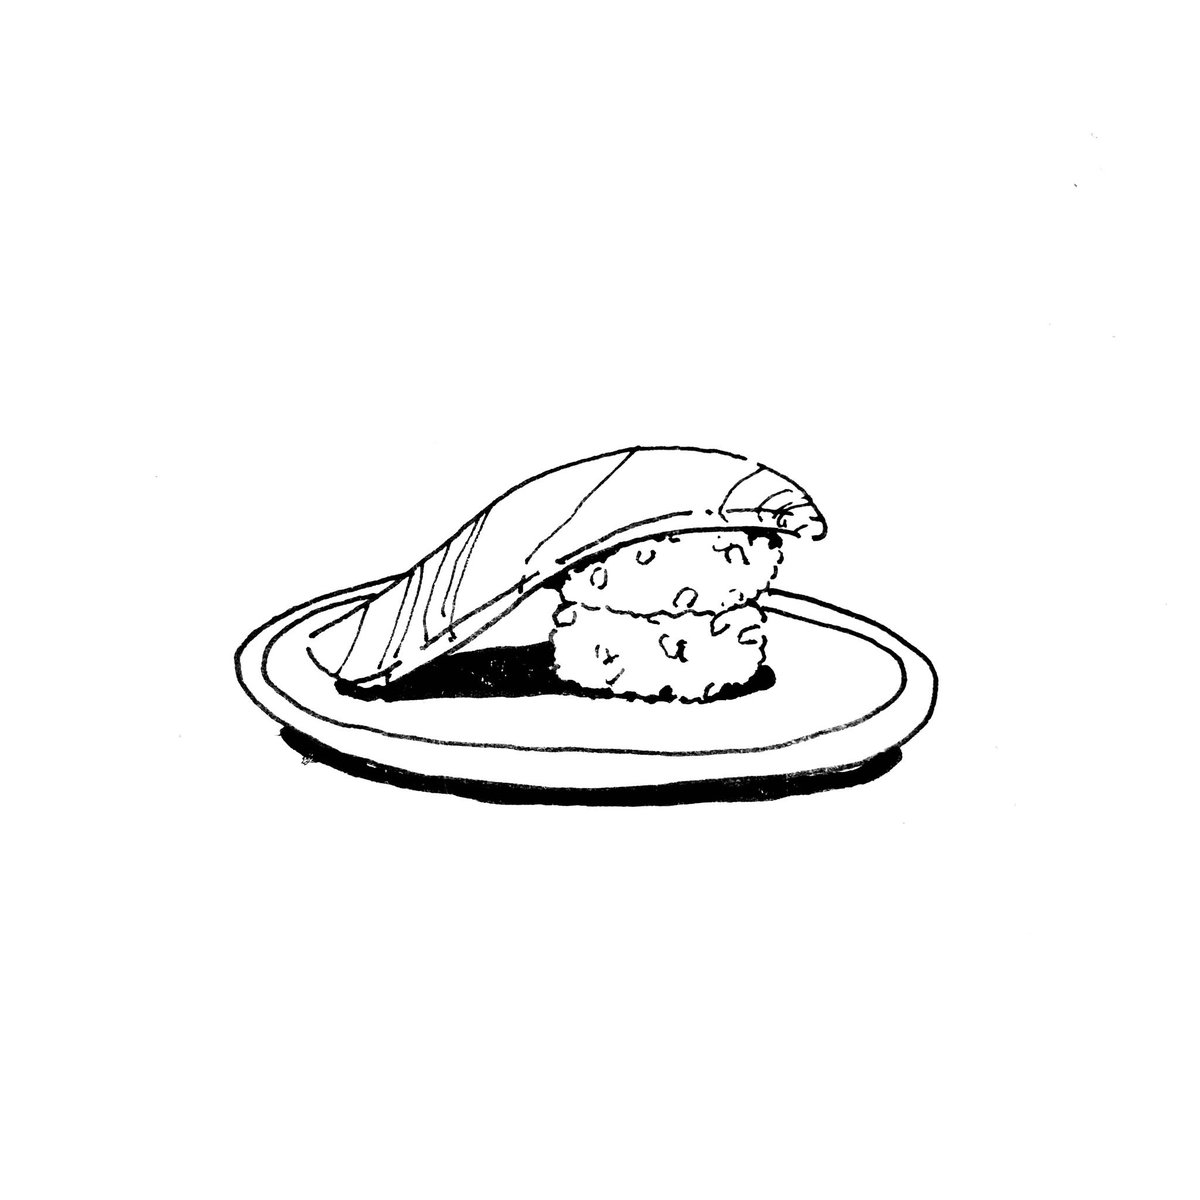 「きょう夢にでてきた怖い寿司 」|地理のイラスト